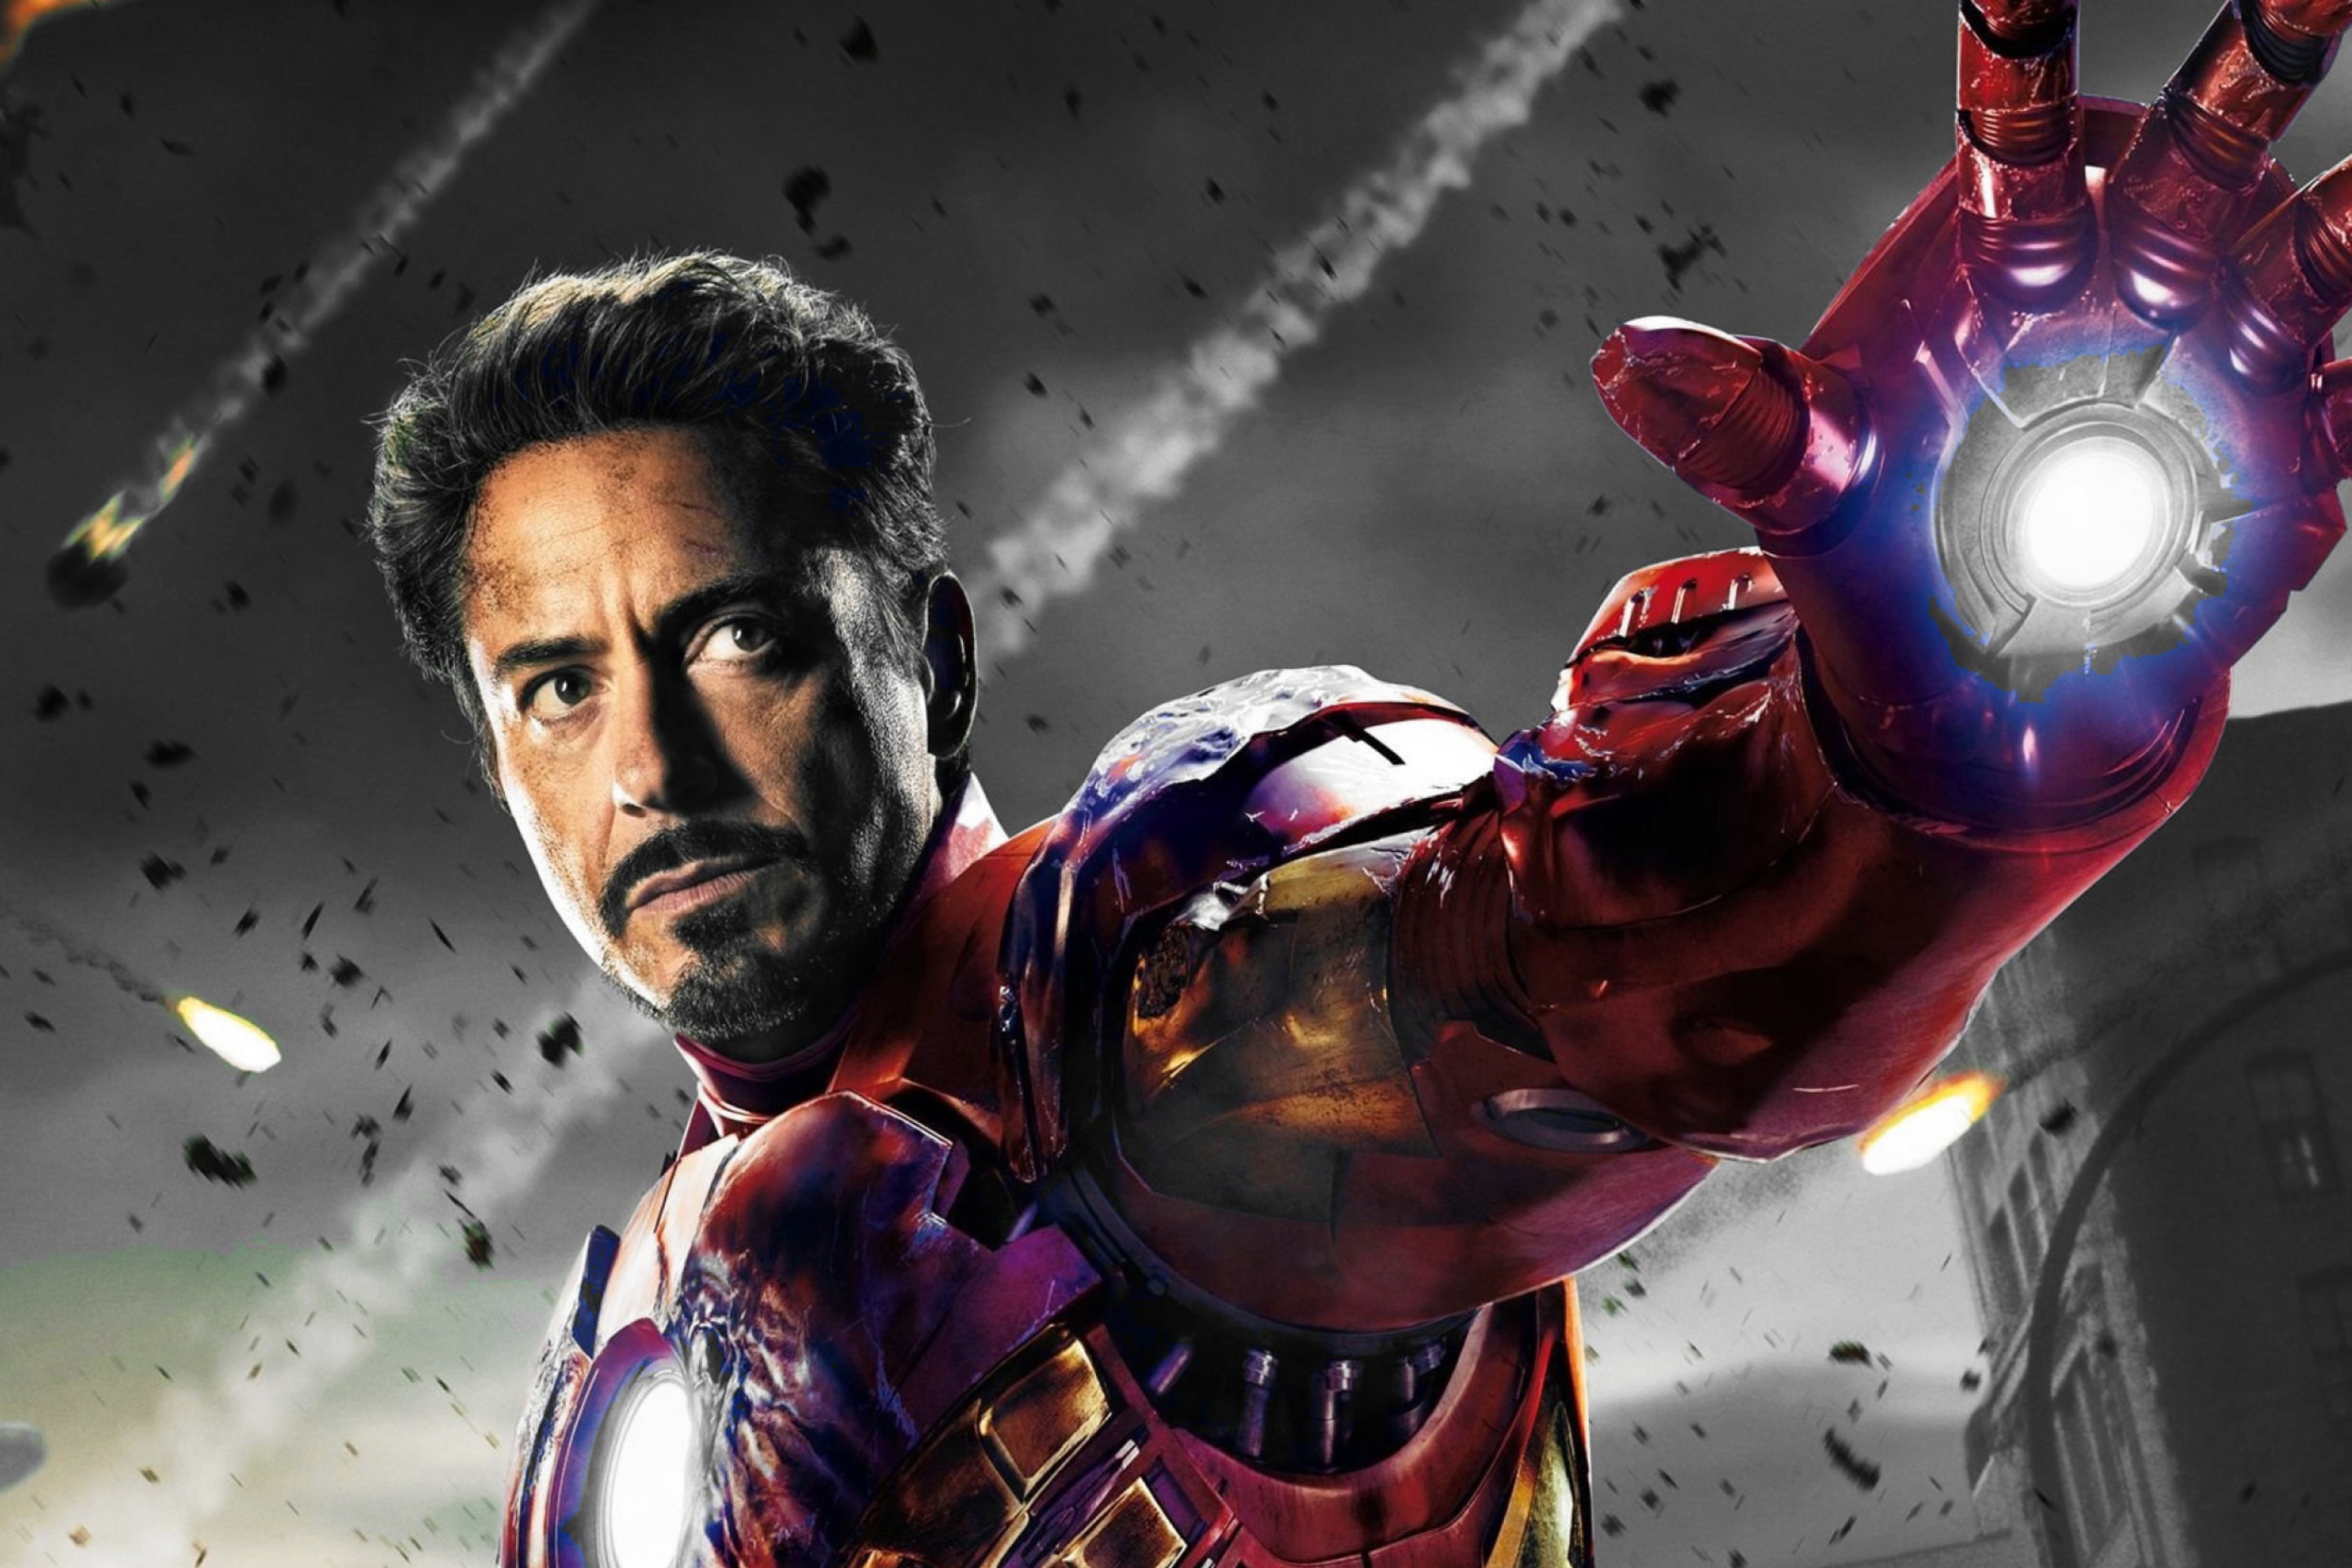 Sfondi Iron Man - The Avengers 2012 2880x1920